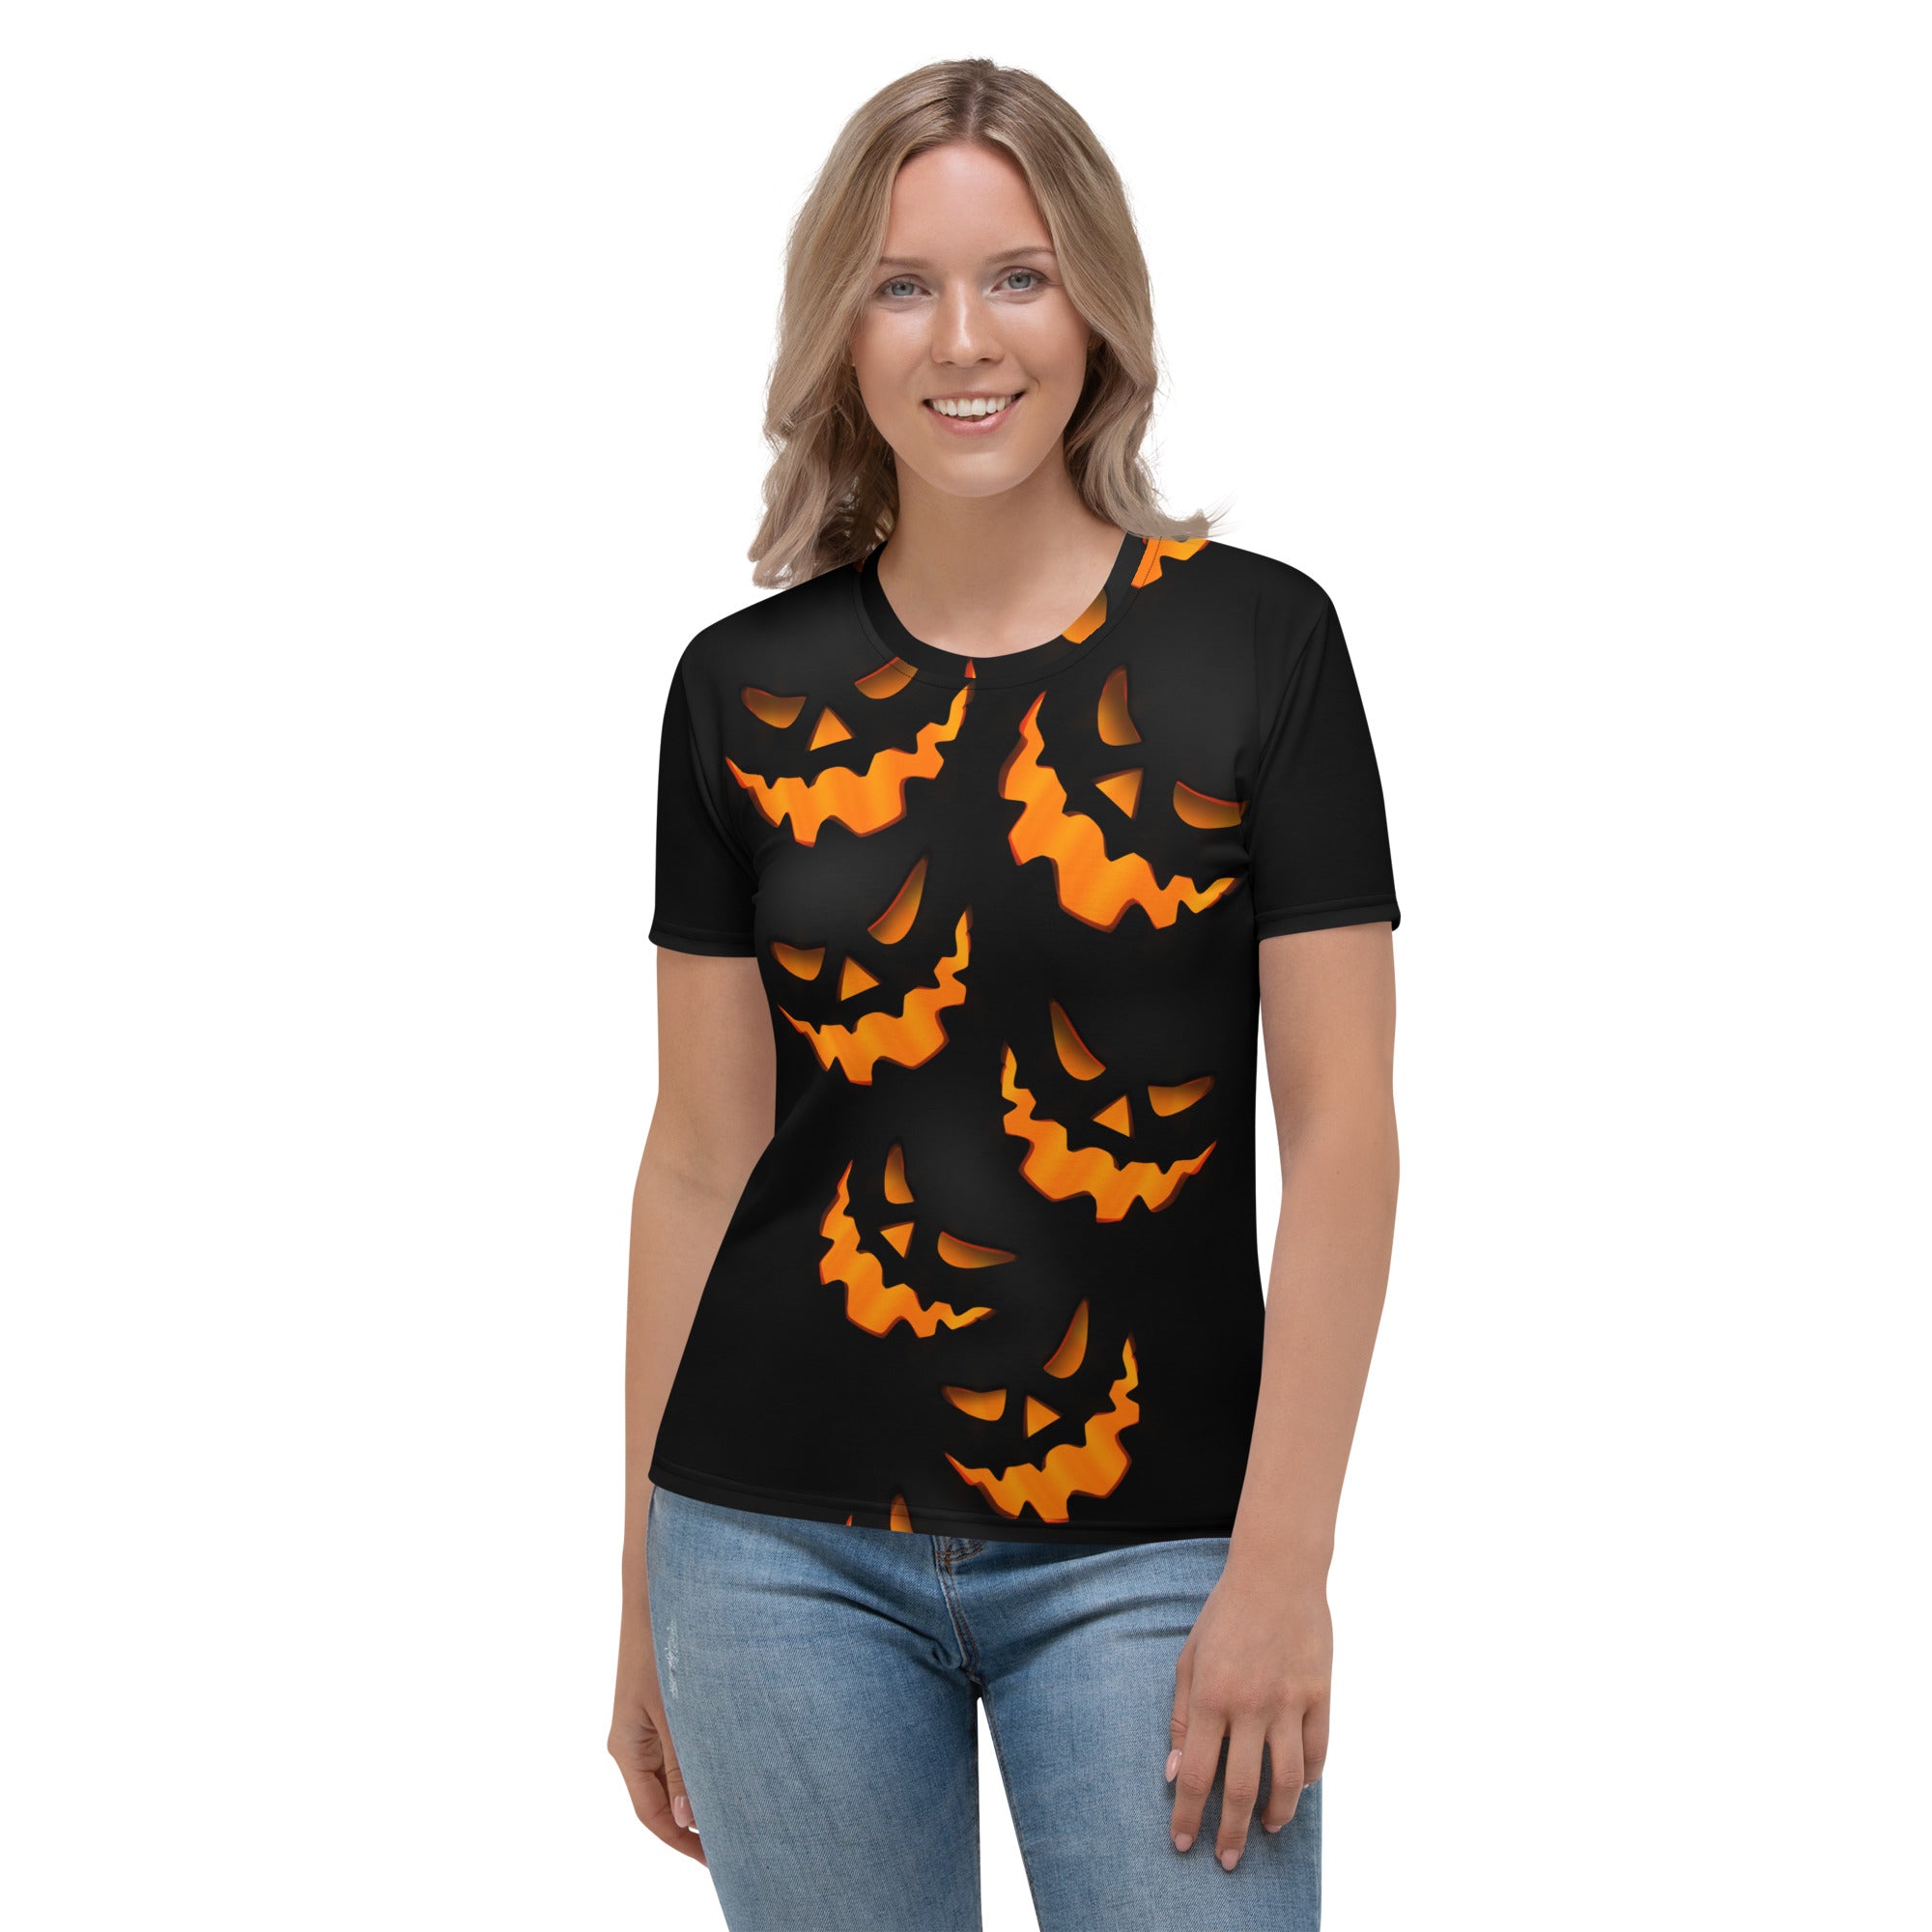 Spooky Pumpkin Halloween T-shirt